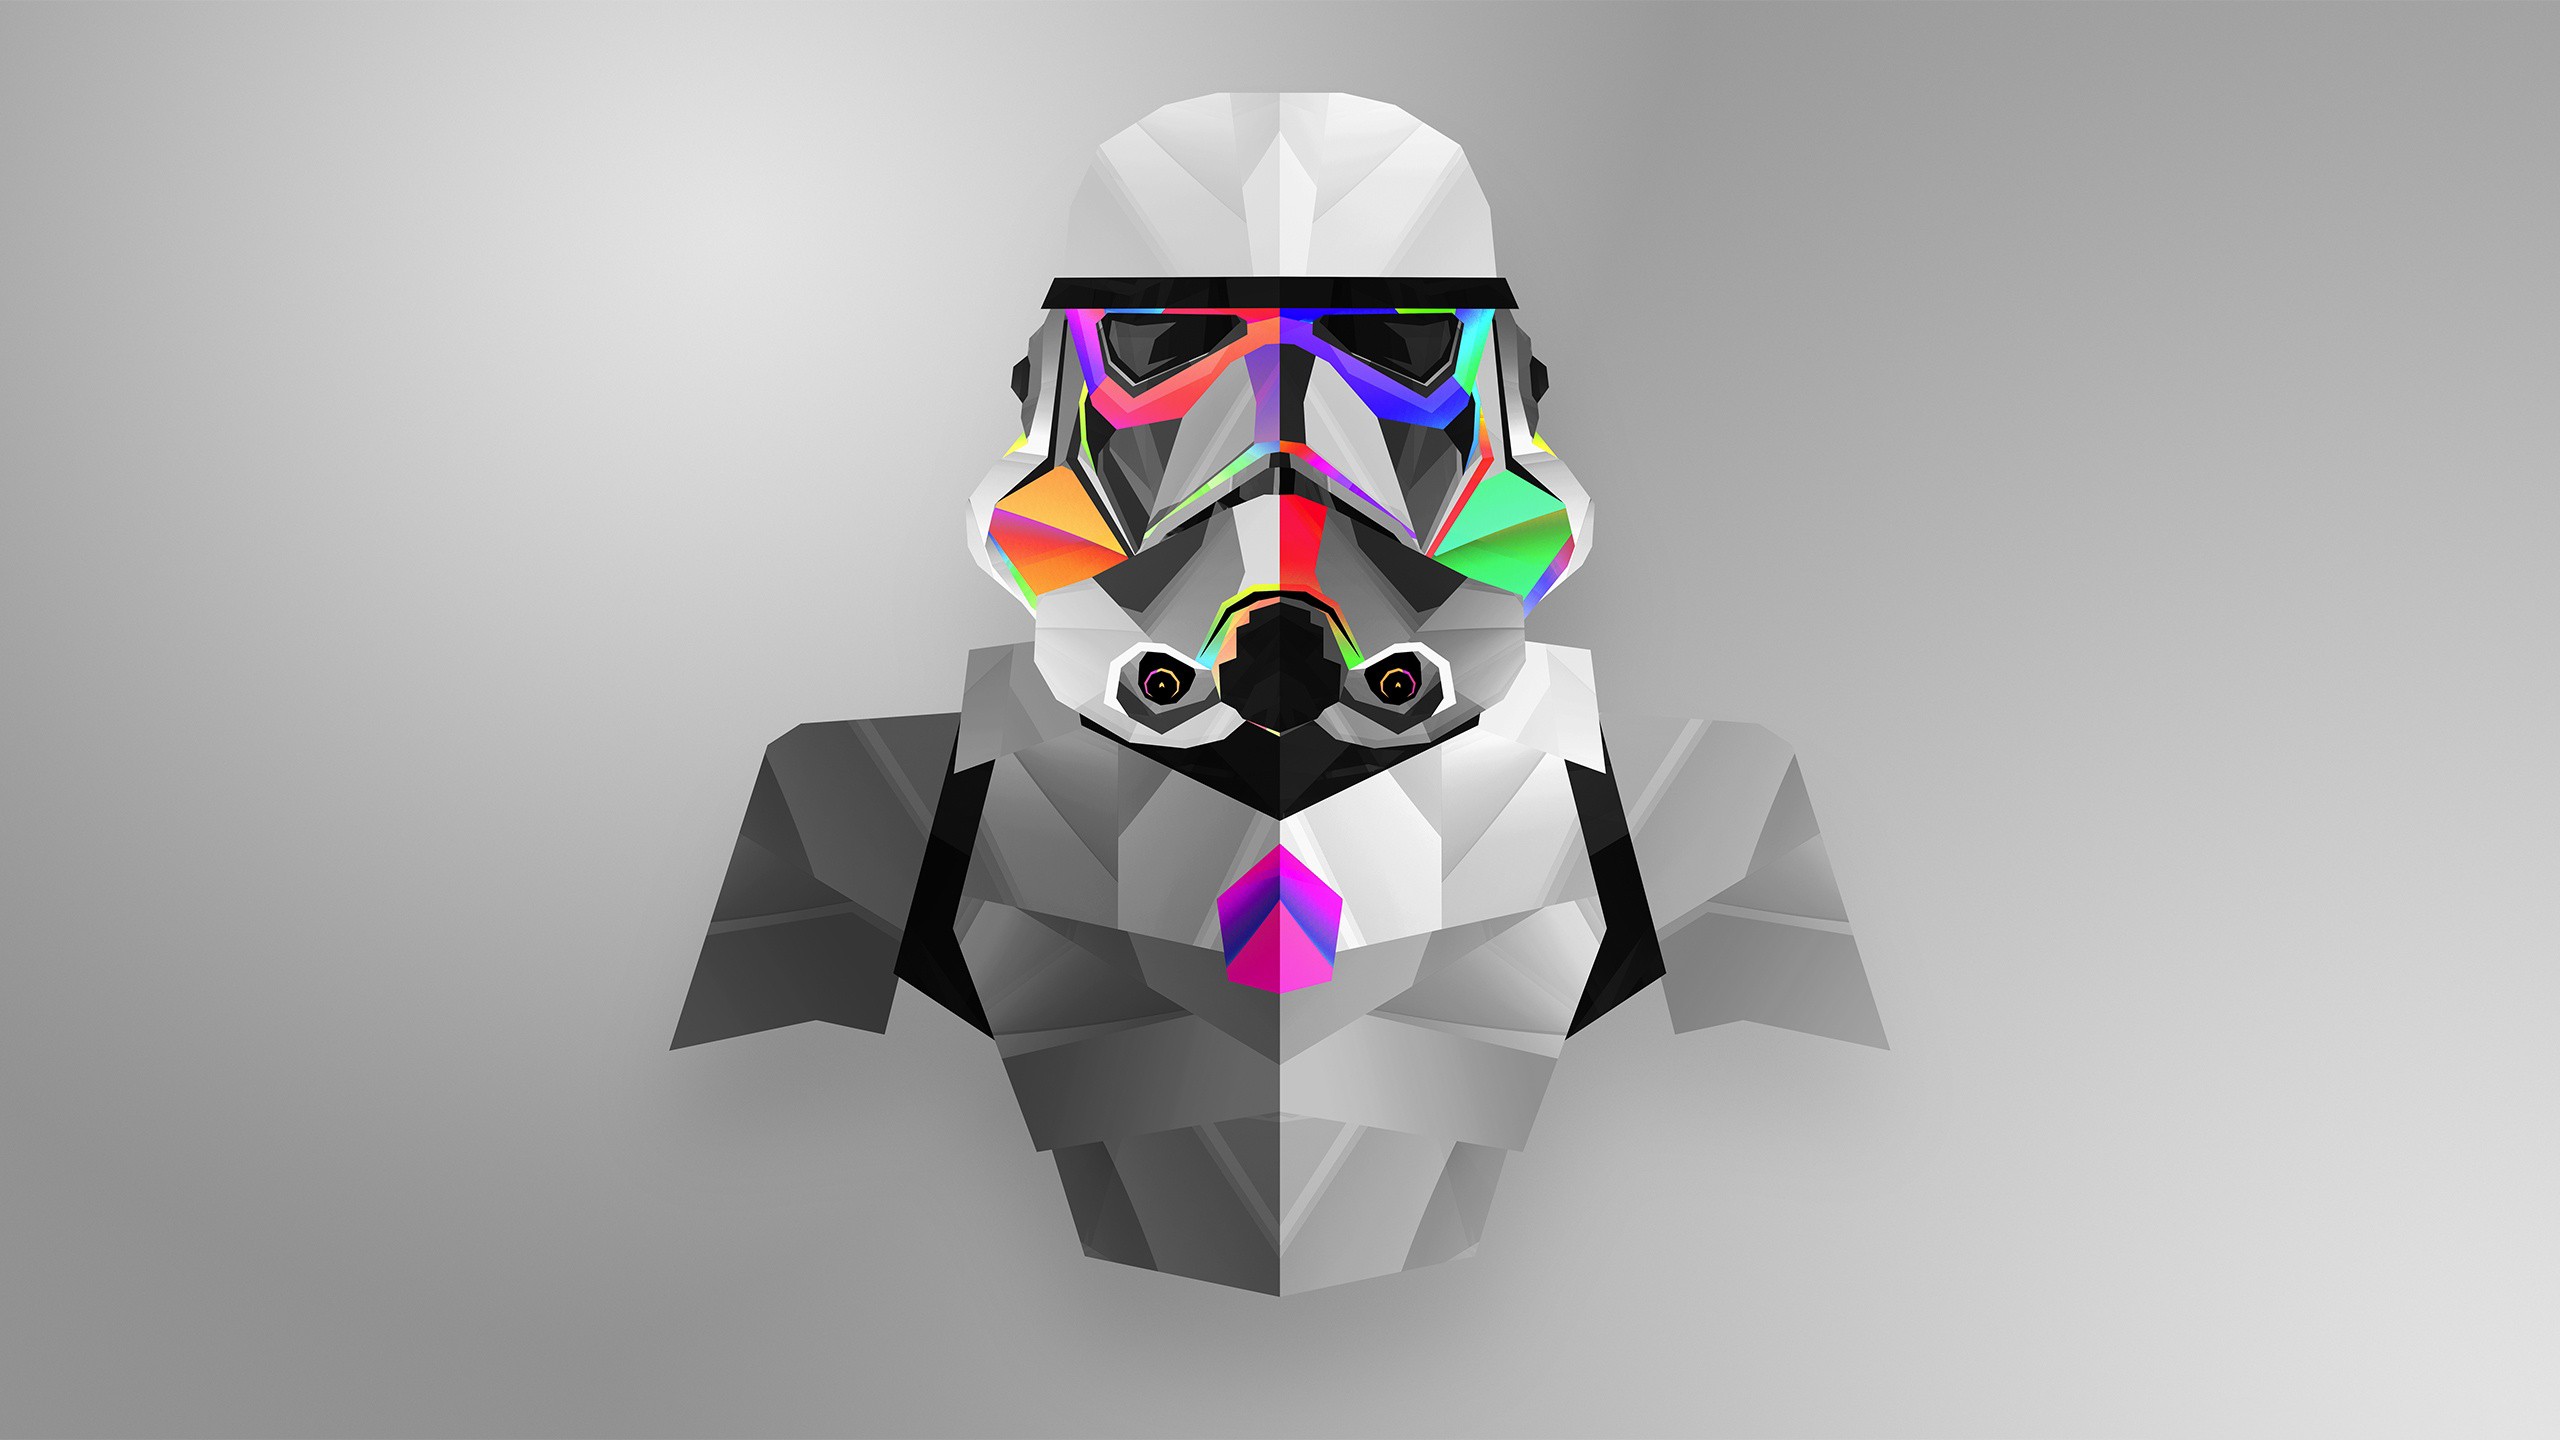 Justin Maller Low Poly Minimalism Digital Art Star Wars 2560x1440